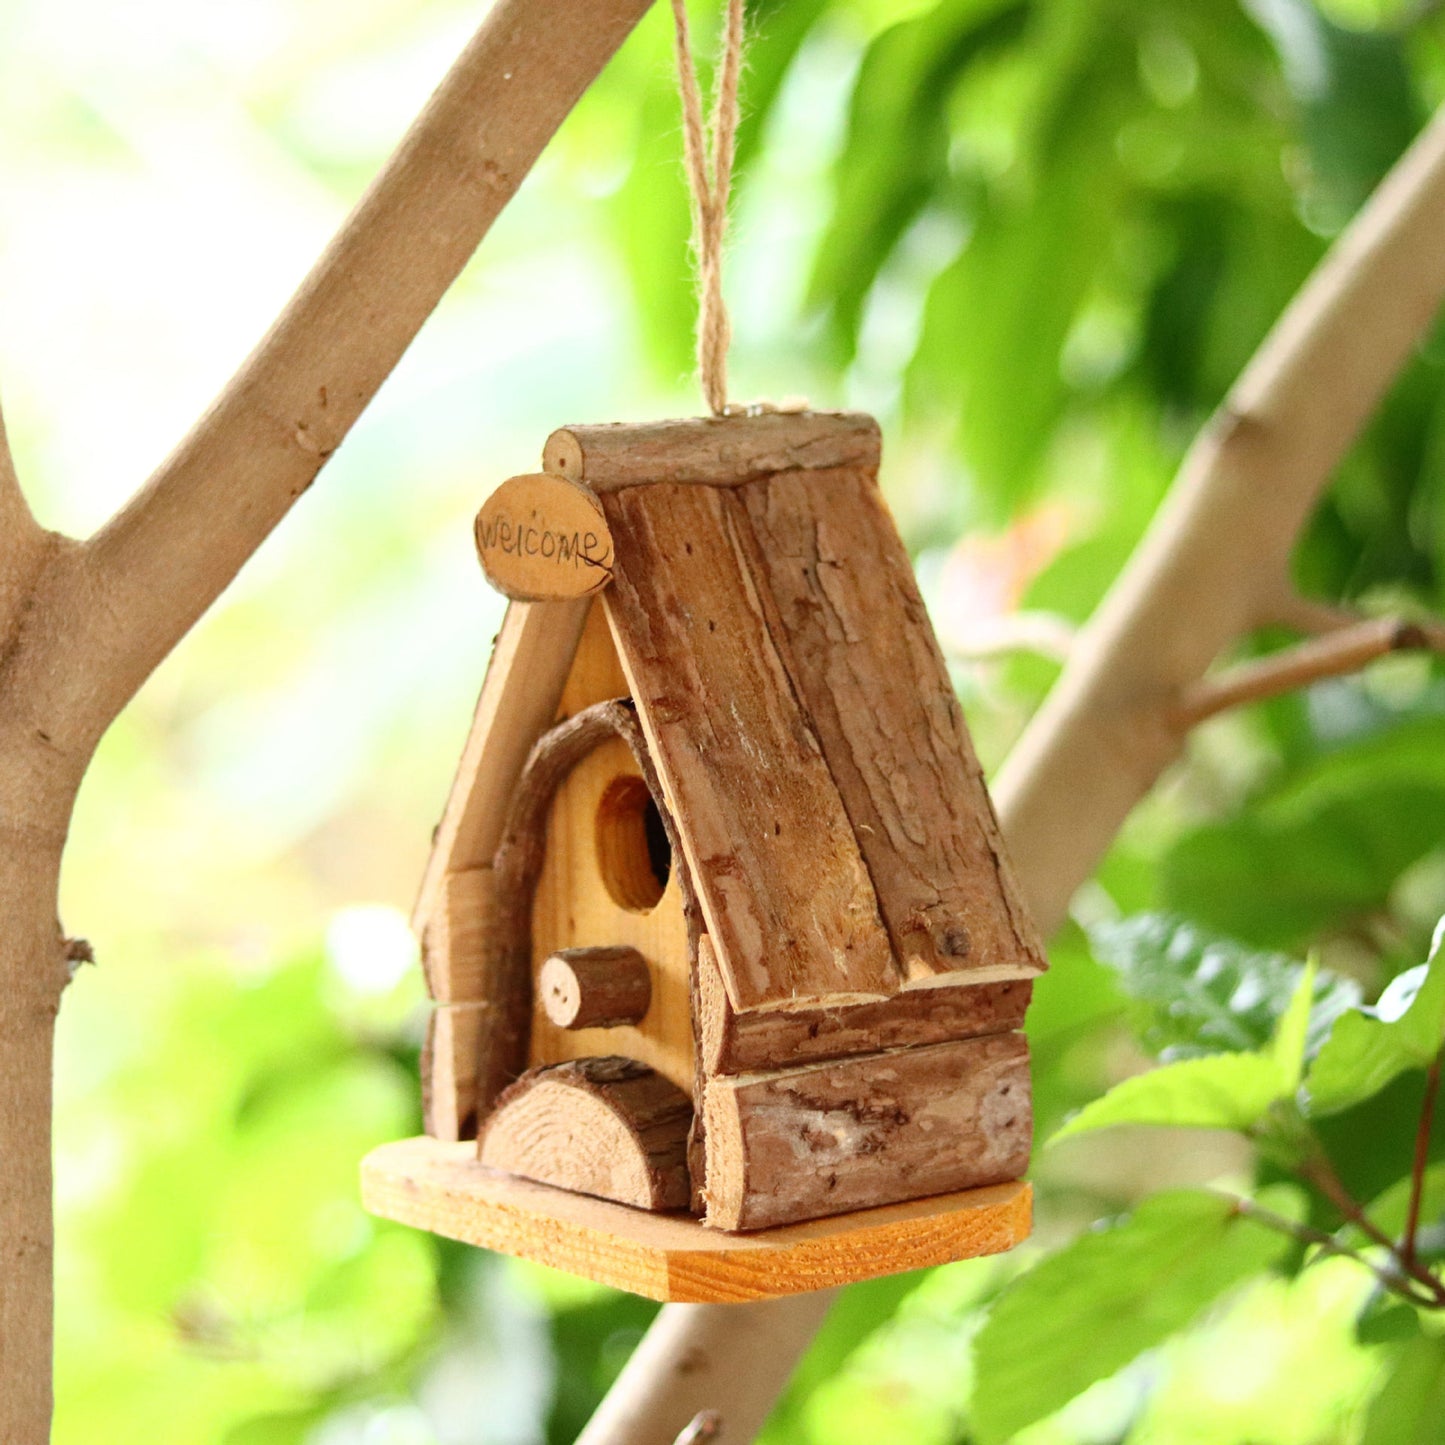 Handmade Wooden Crafts Factory Bird House